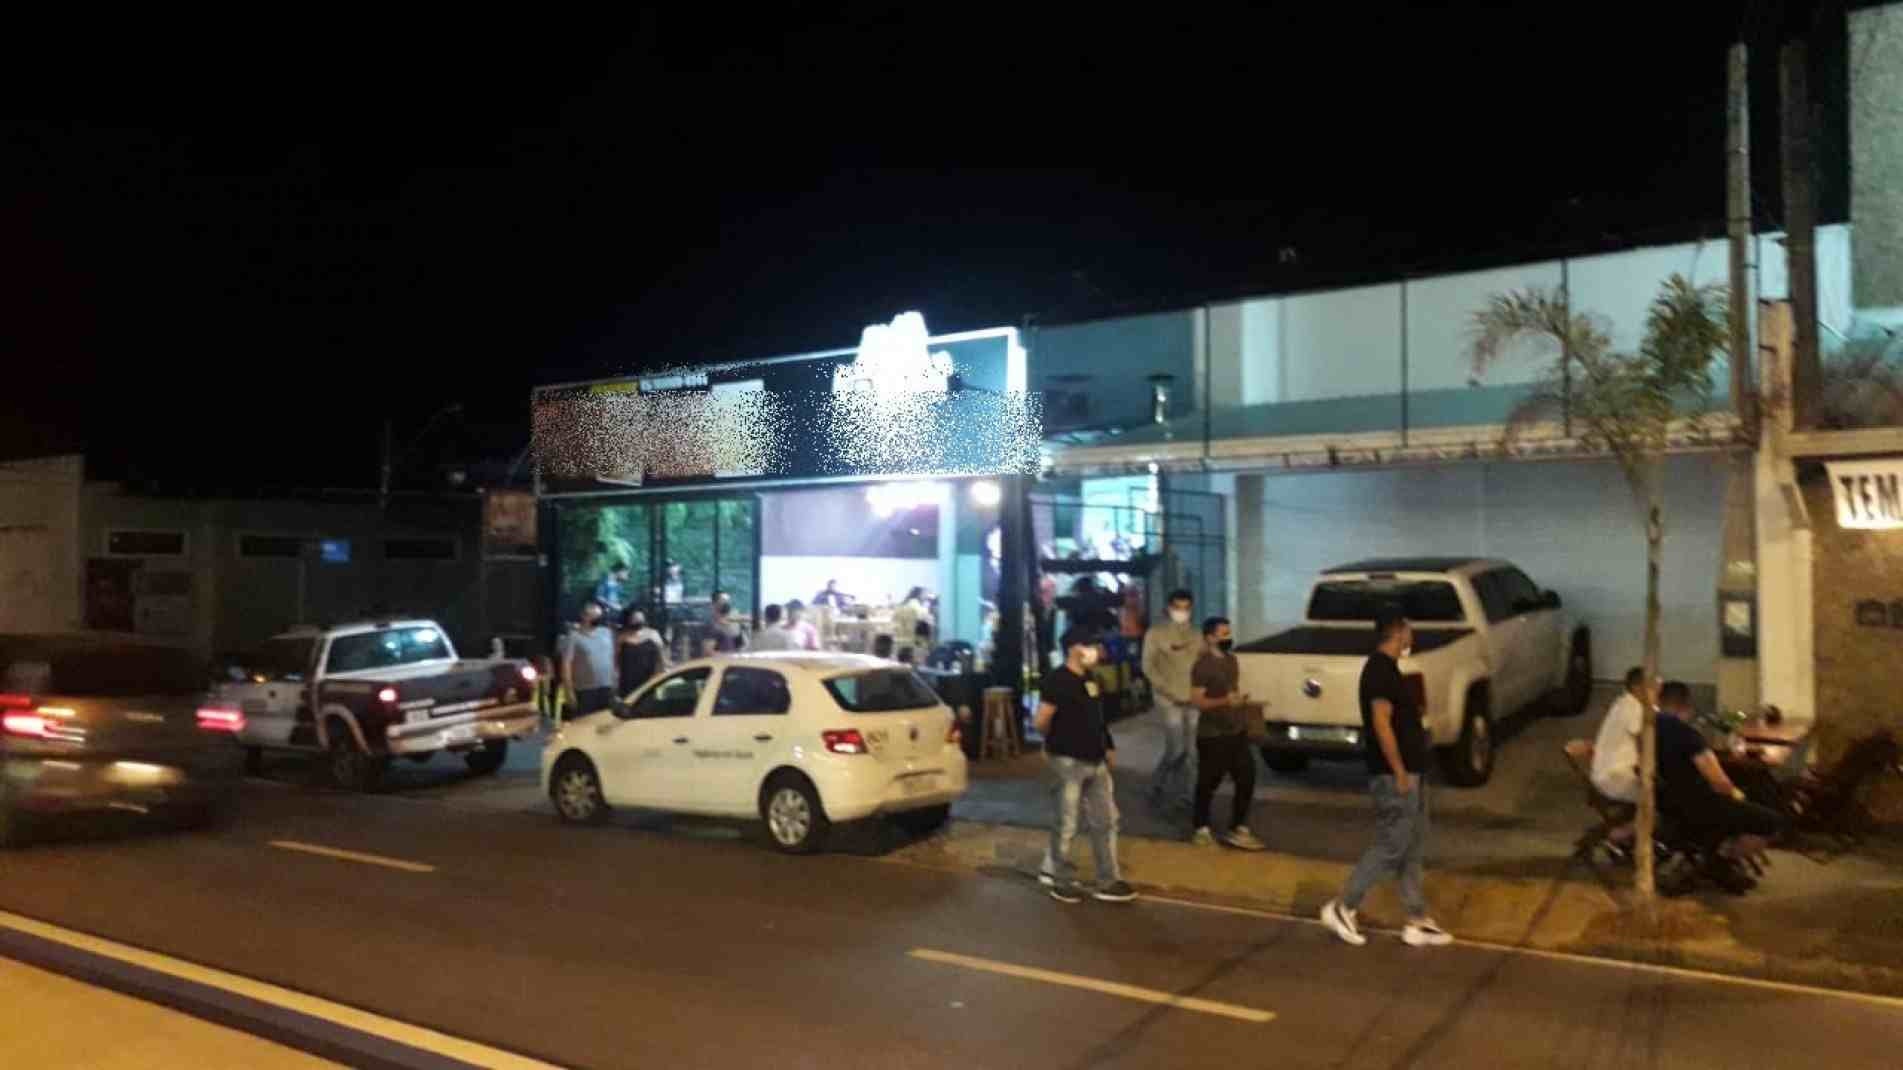 Durante a ação, um estabelecimento na Avenida Ipanema foi notificado por som alto e interdição de calçada